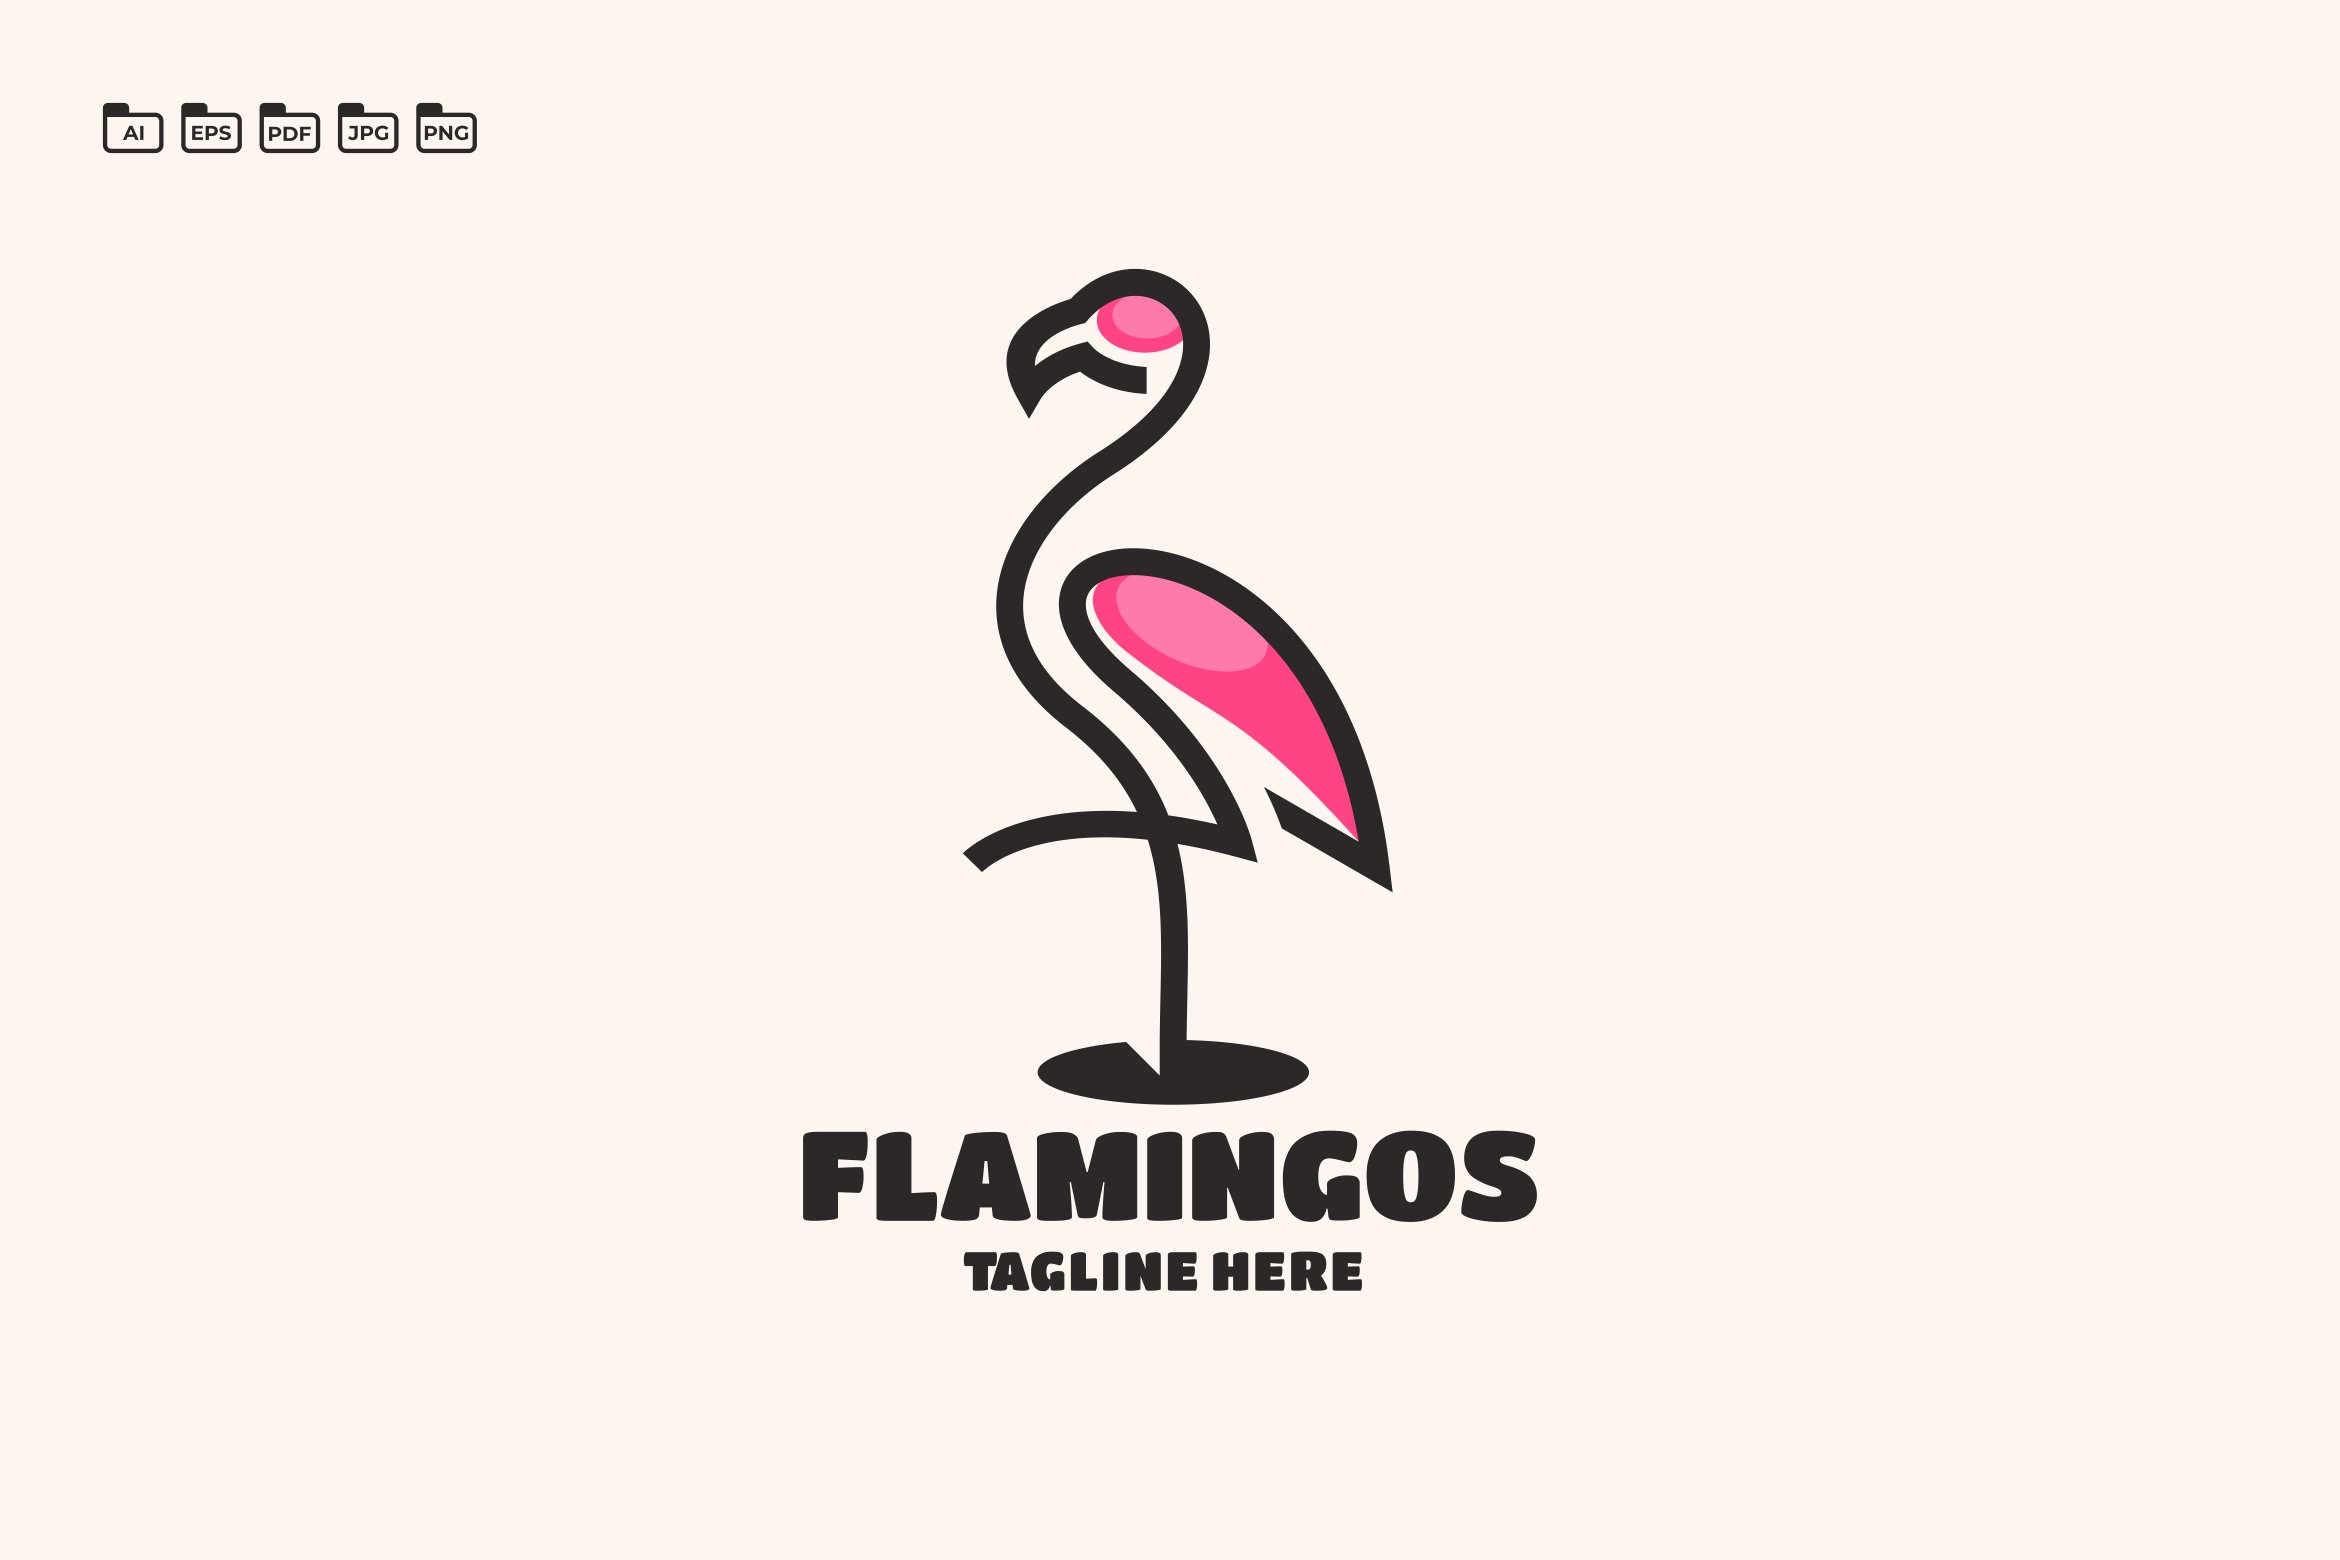 Flamingo Logo Template cover image.